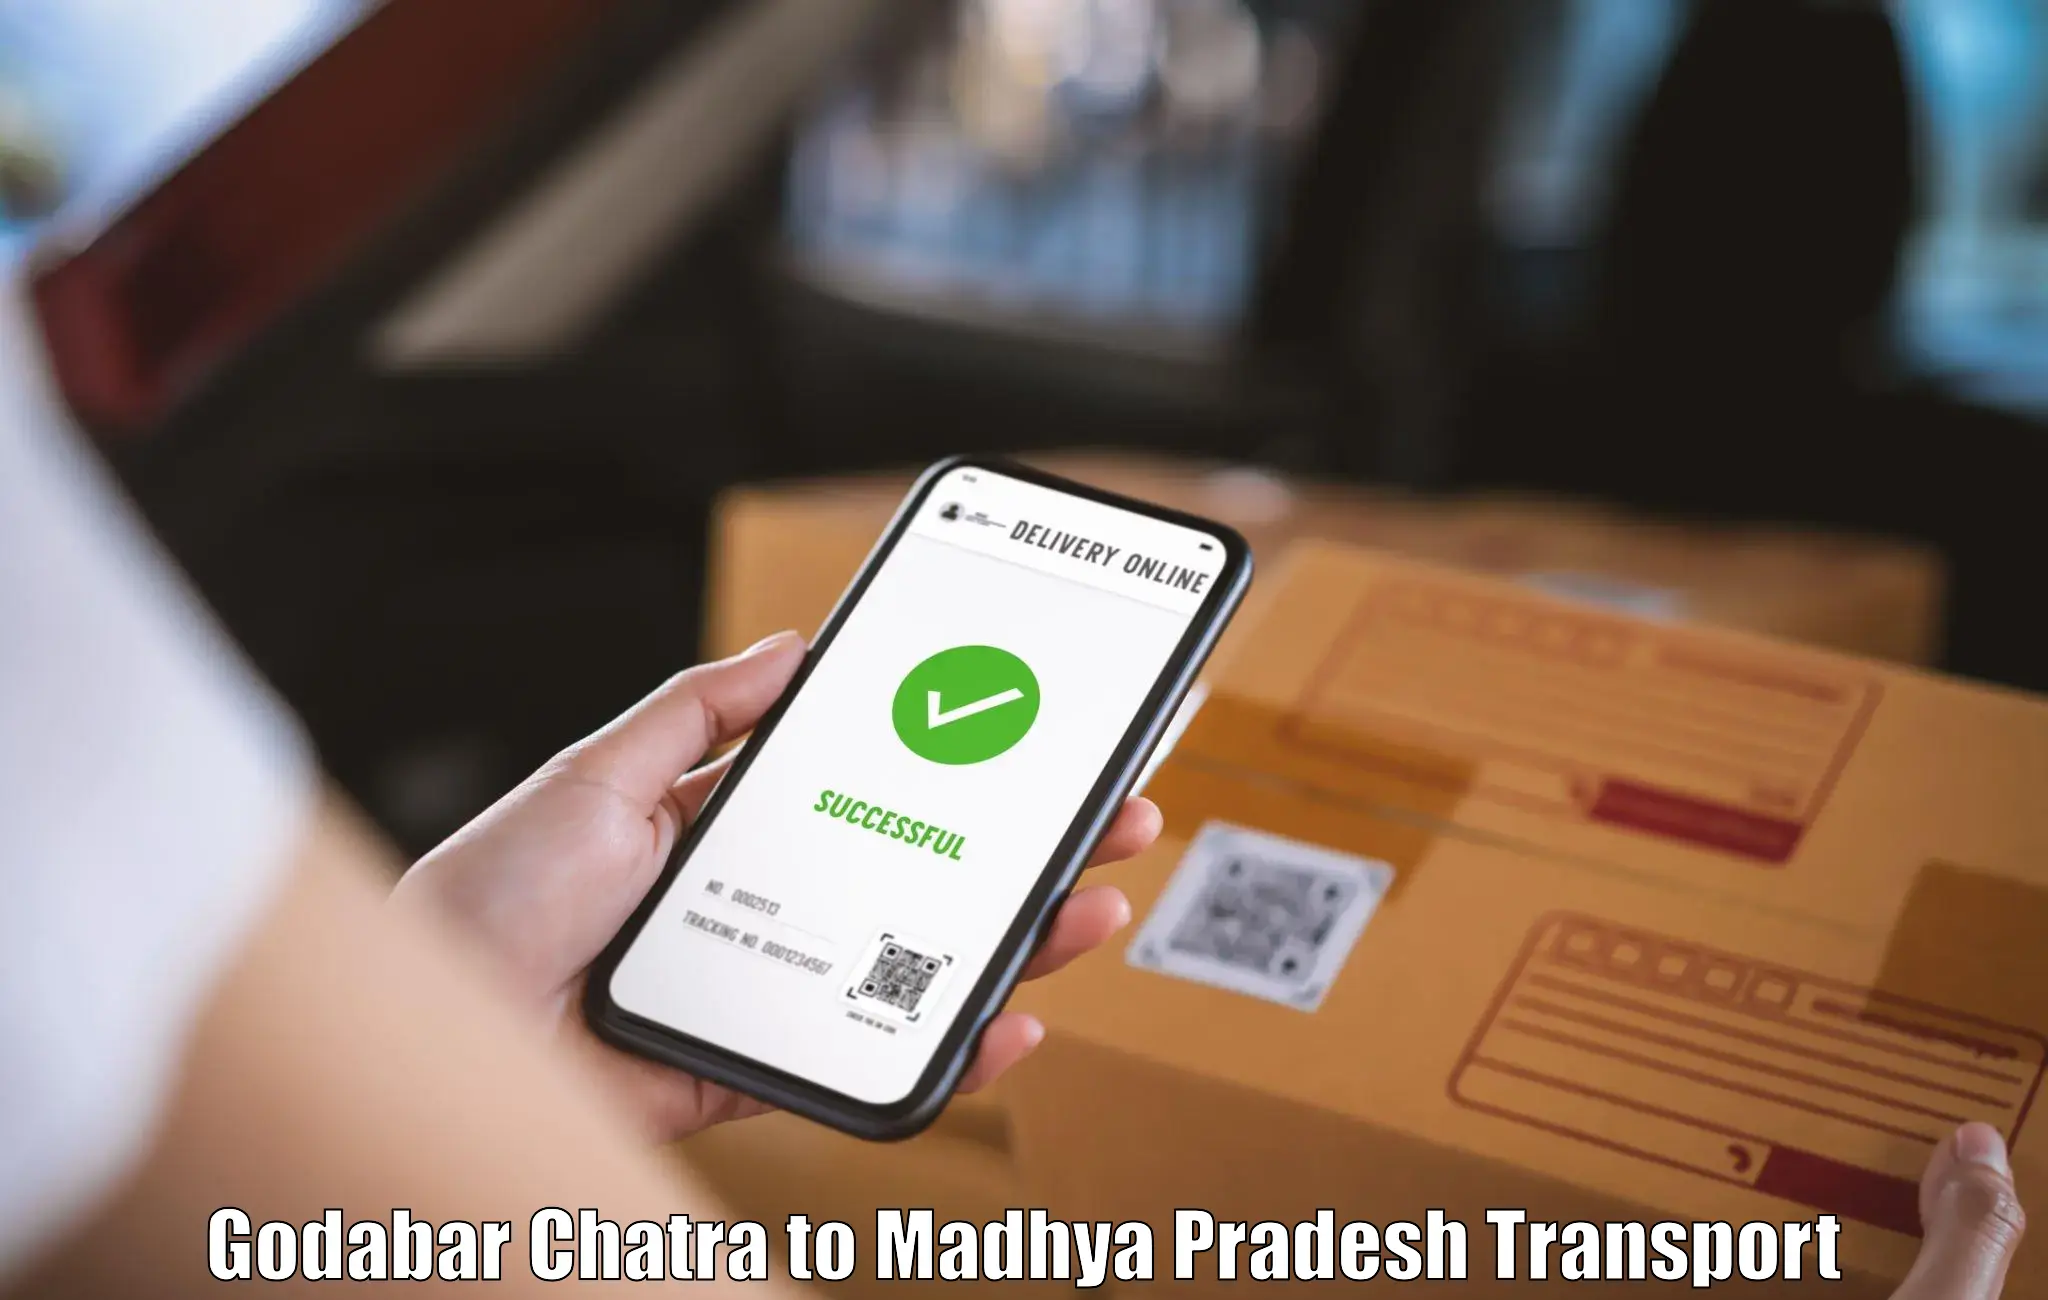 Commercial transport service Godabar Chatra to Ashoknagar